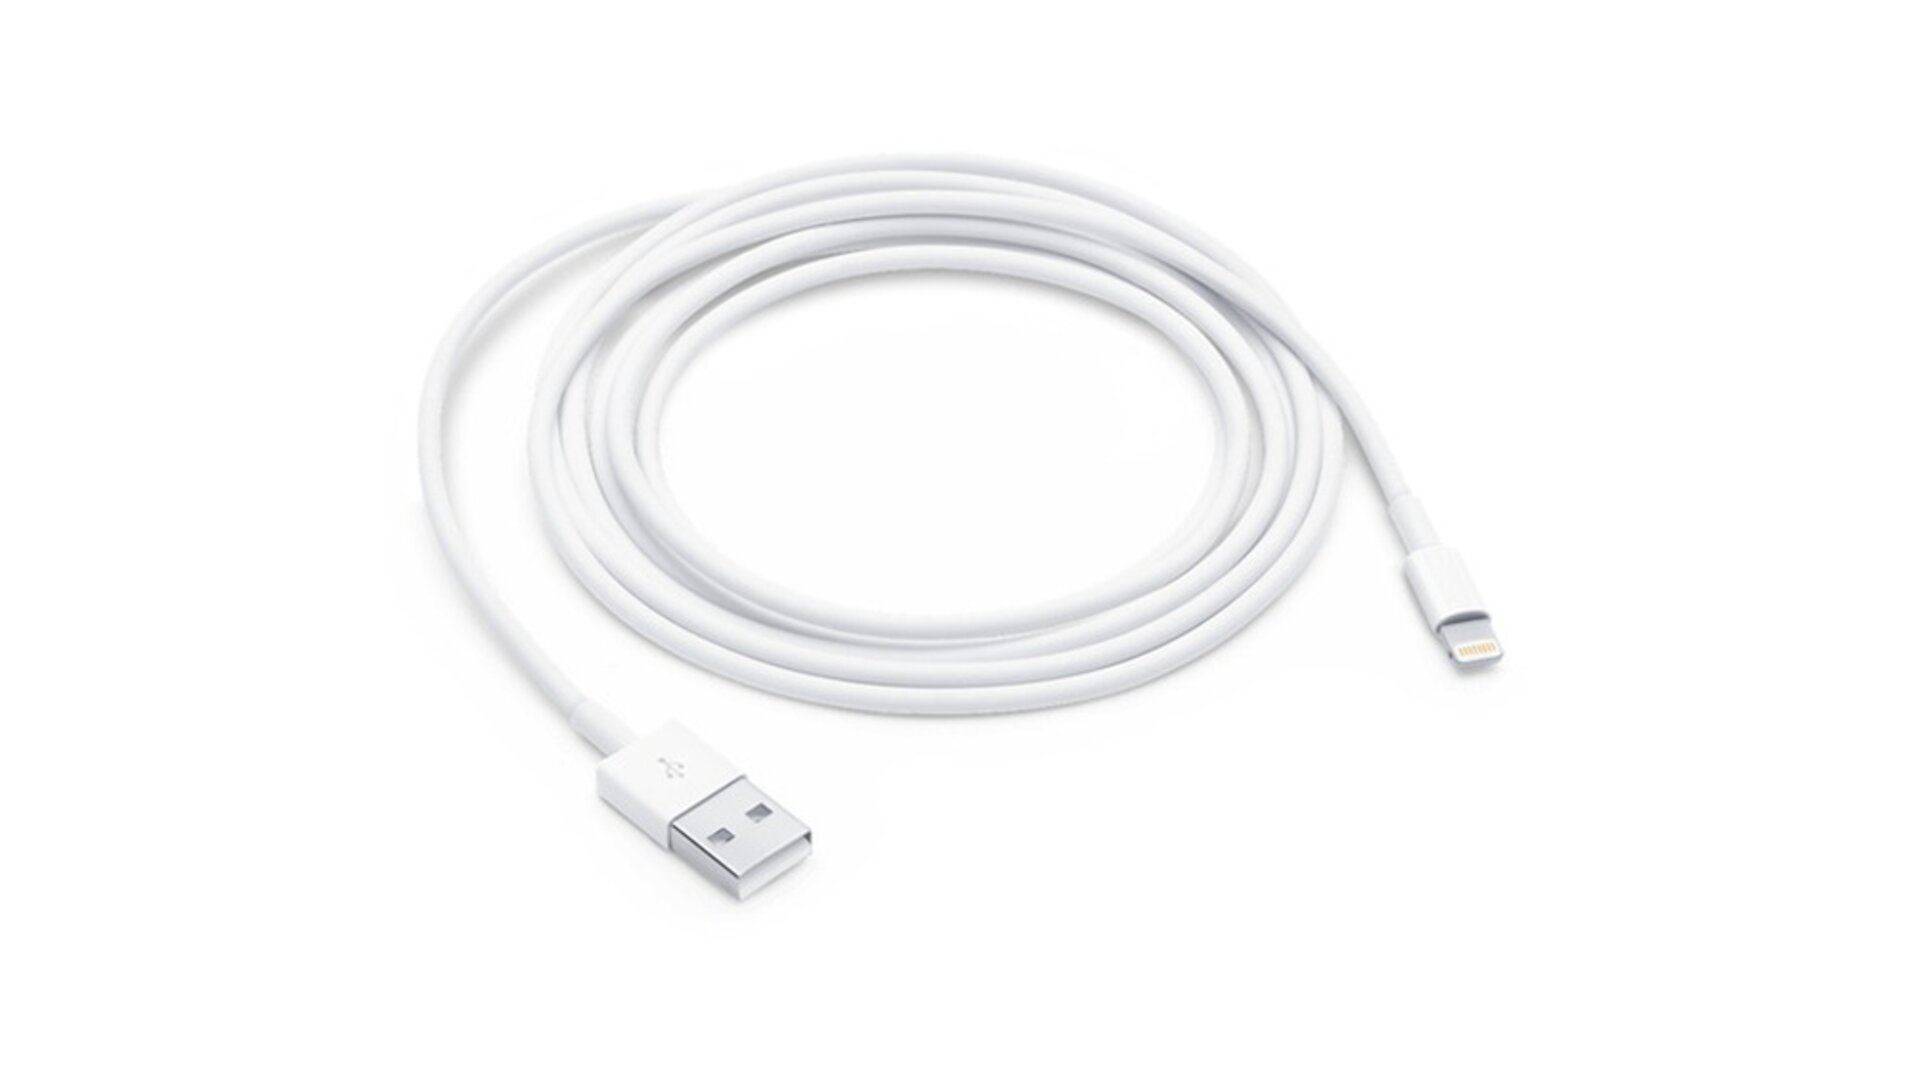 Lightning to USB Cable დამტენი usb კაბელი (2მ)